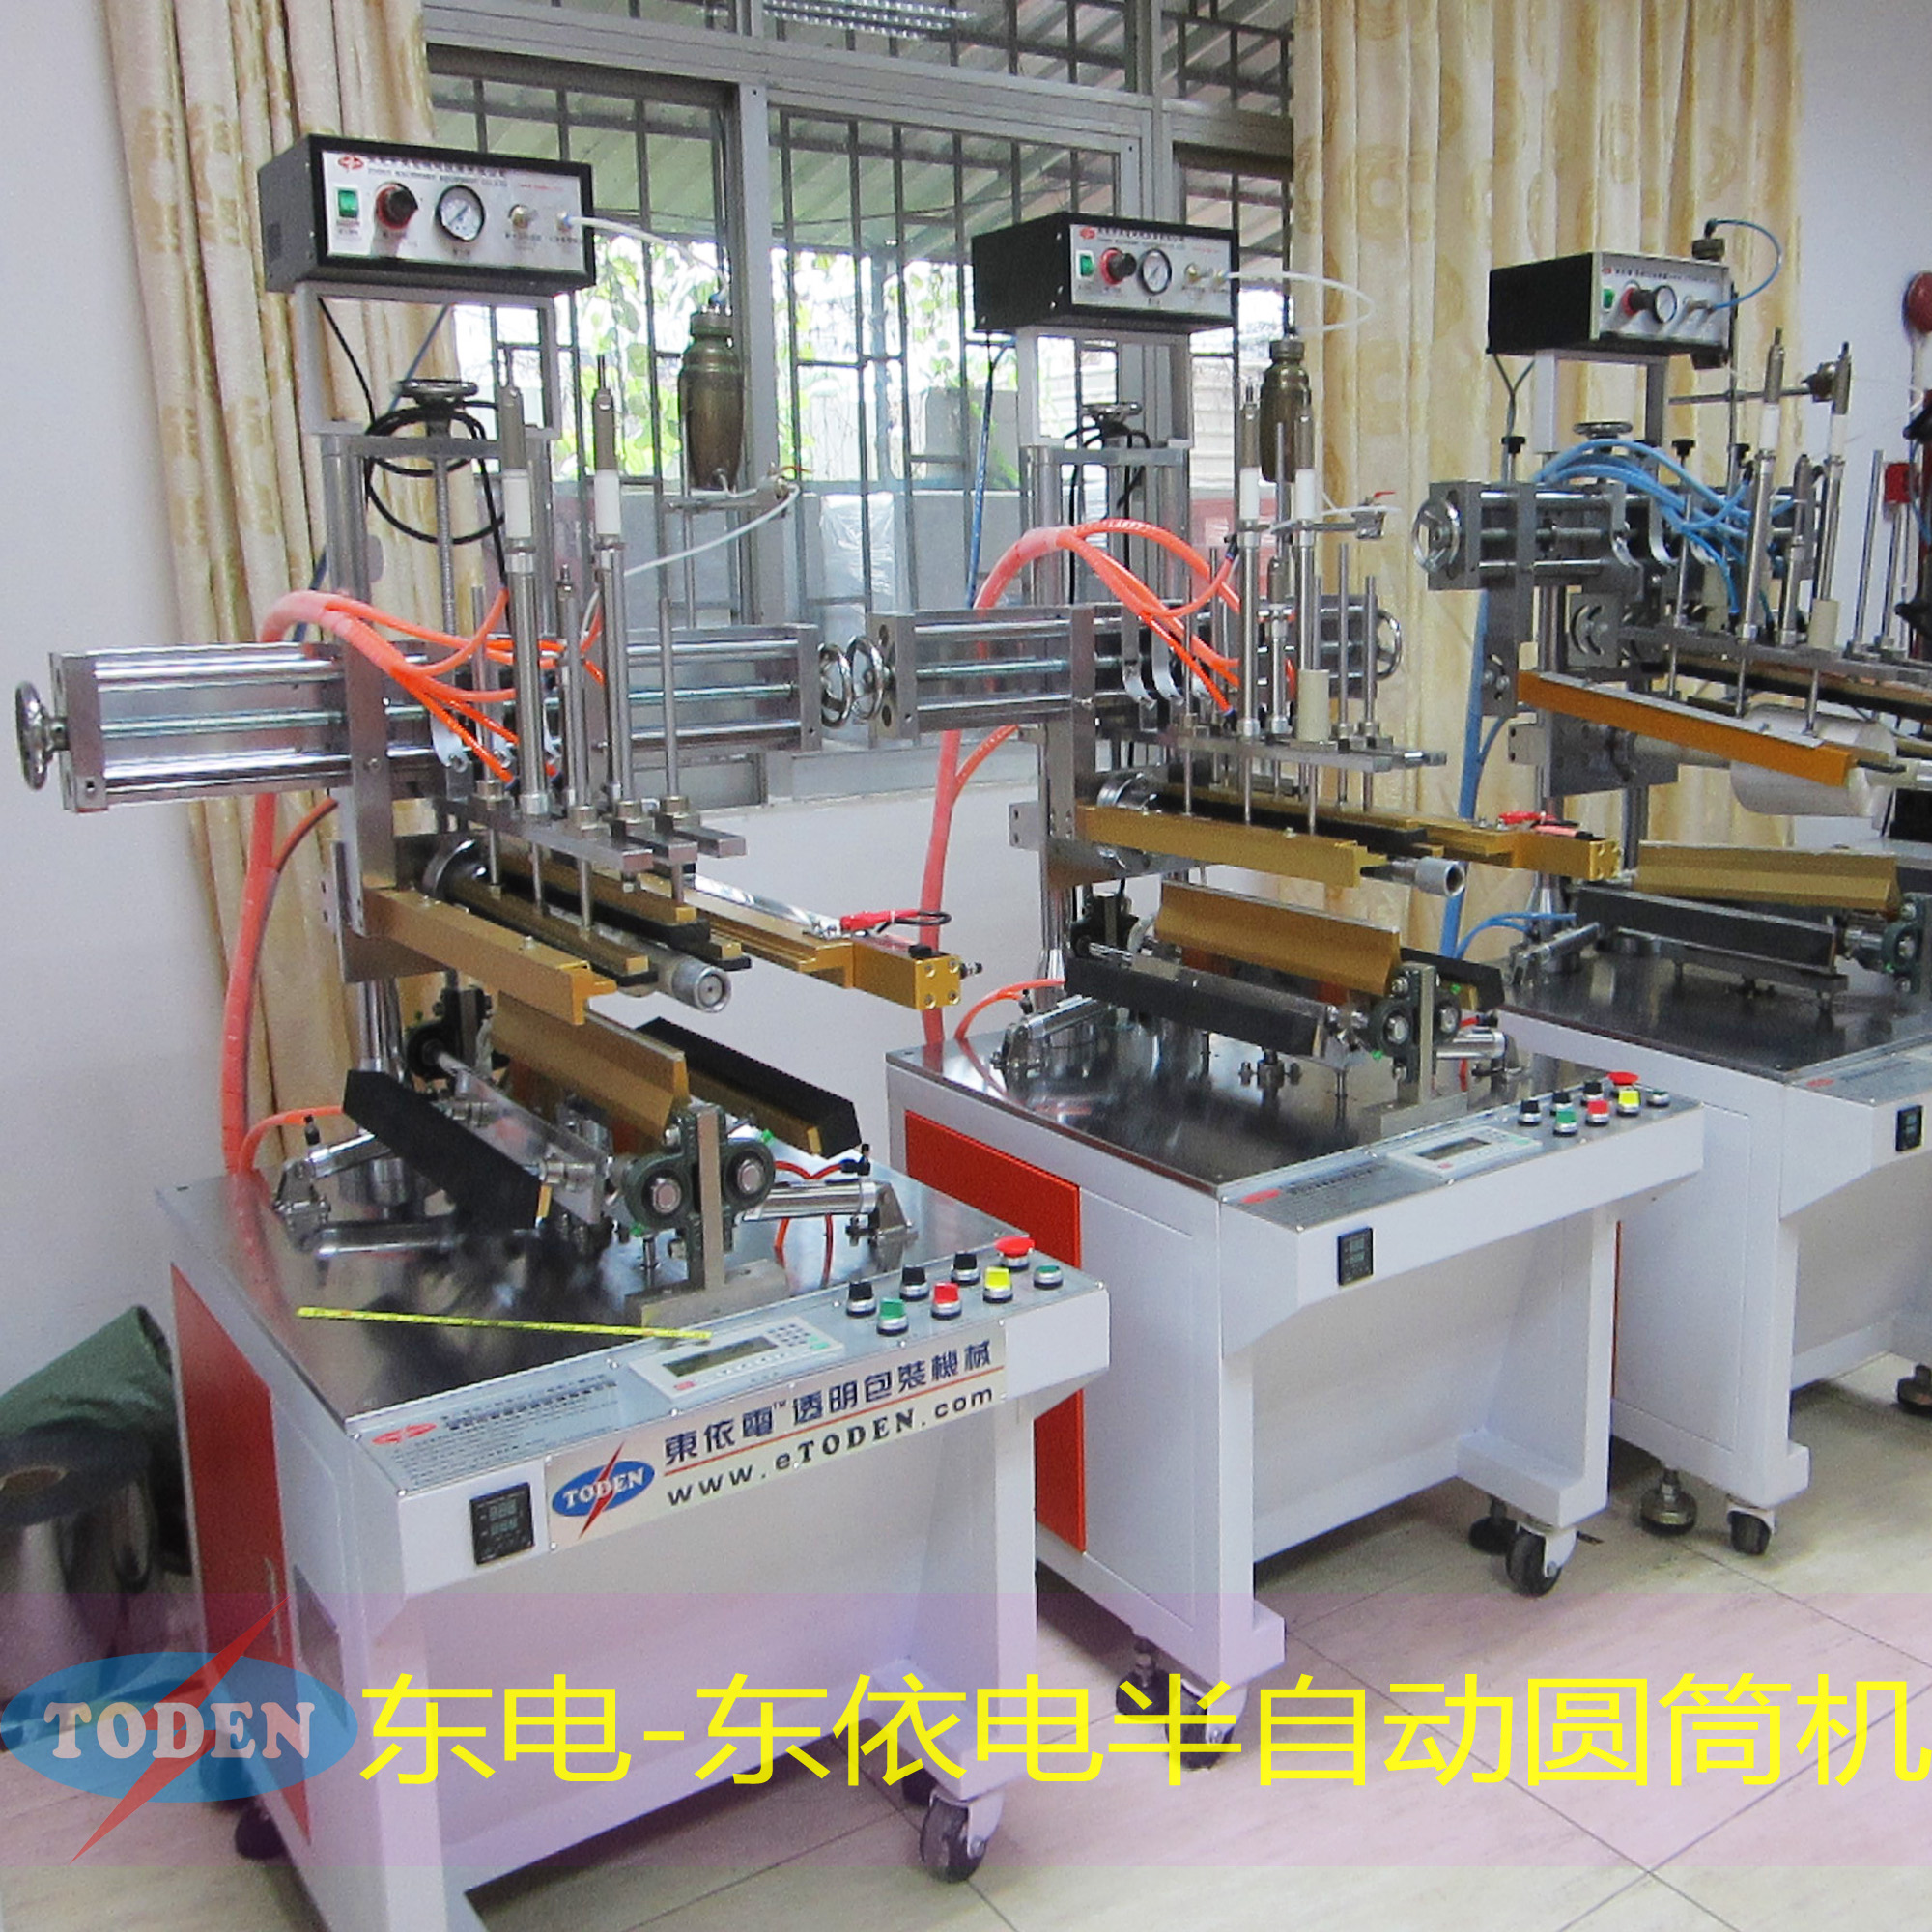 东莞东电锥形圆筒机 超声波圆筒机厂家 半自动圆筒机制造商